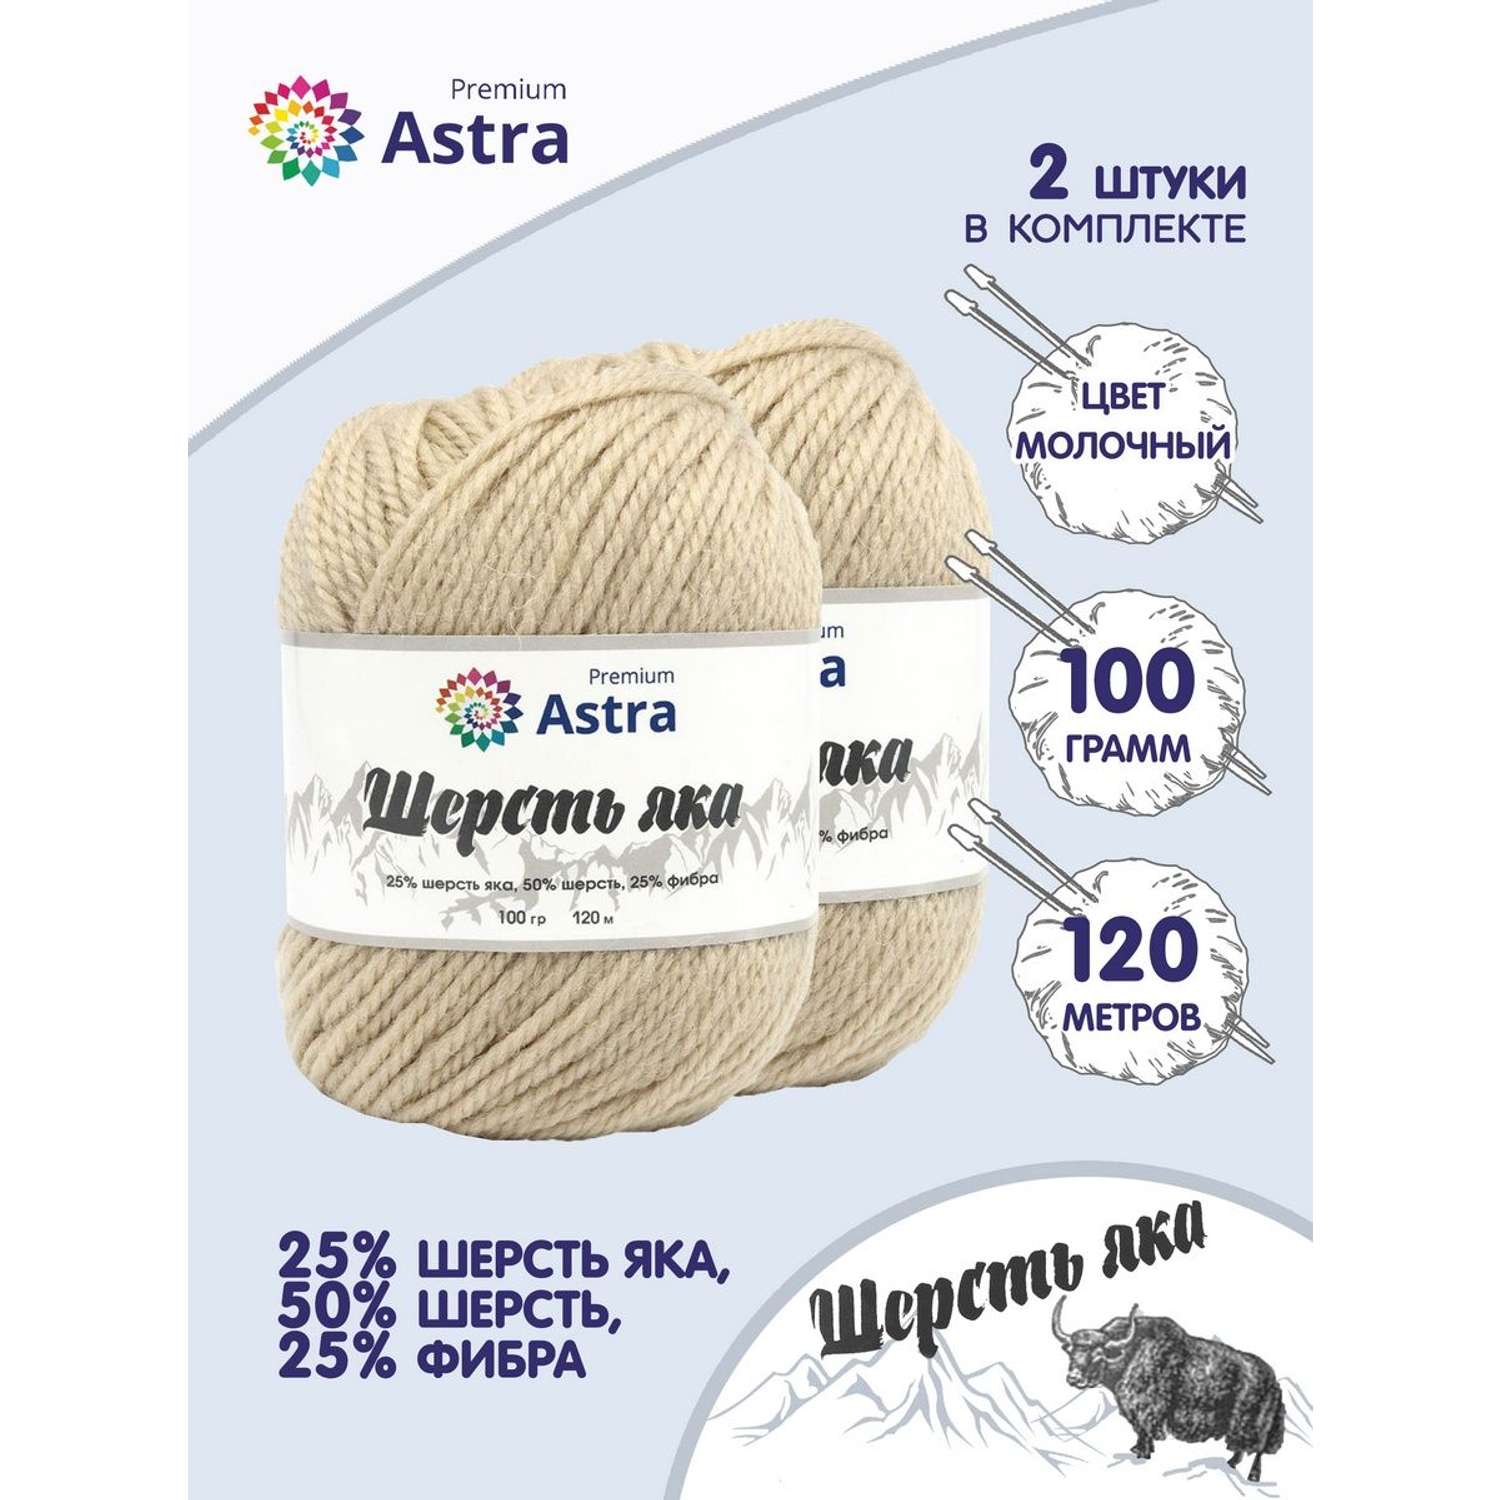 Пряжа Astra Premium Шерсть яка Yak wool теплая мягкая 100 г 120 м 06 молочный 2 мотка - фото 1